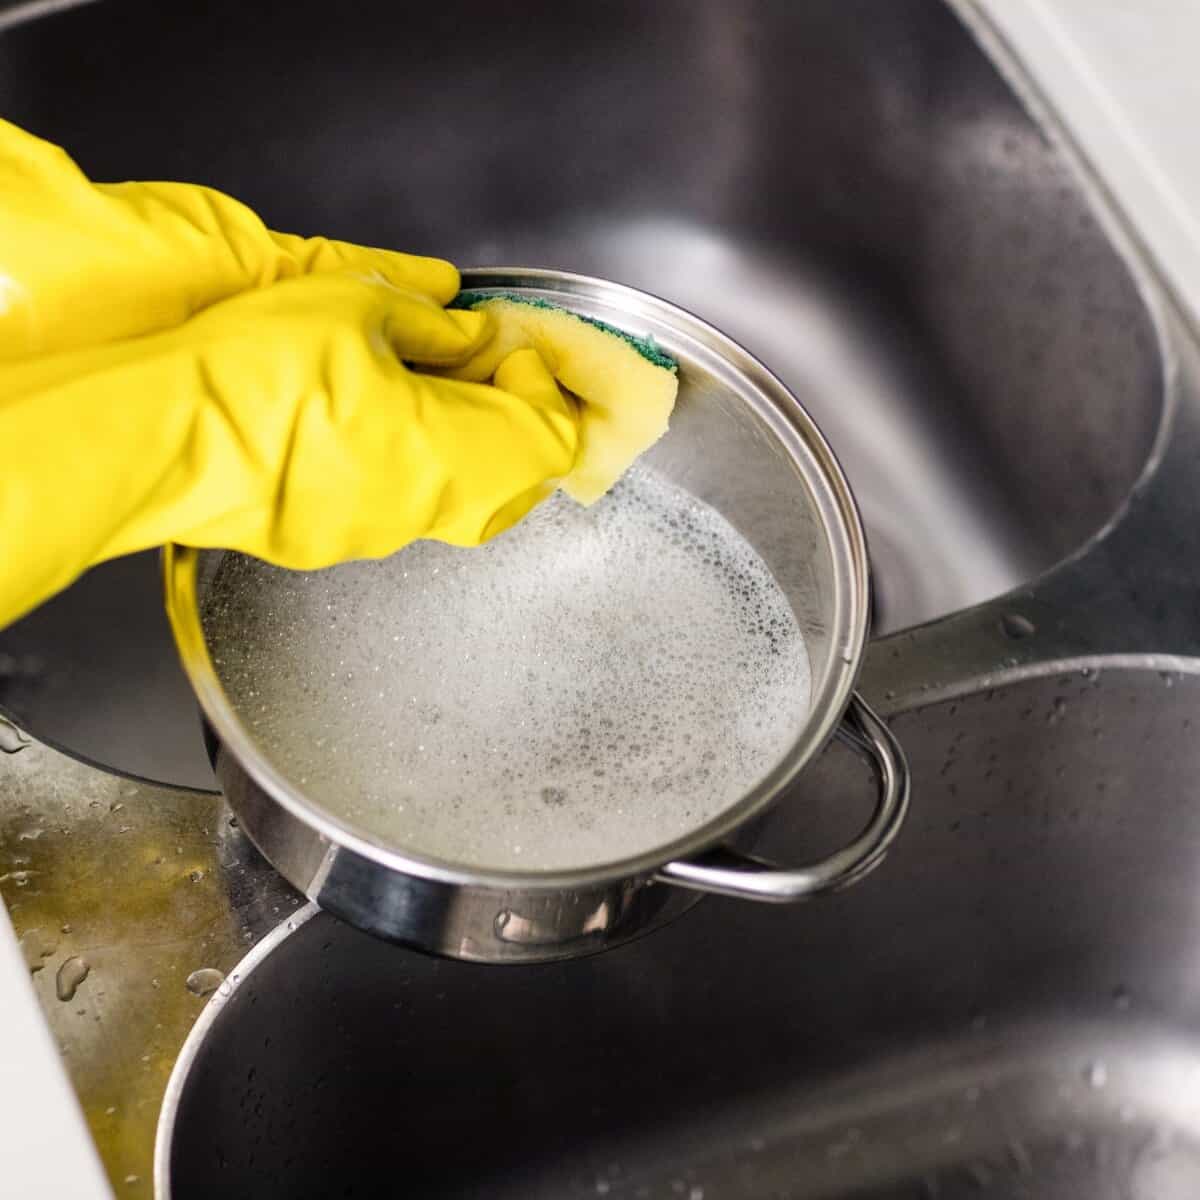 วิธีทำความสะอาดอุปกรณ์ทำอาหารและกระทะ